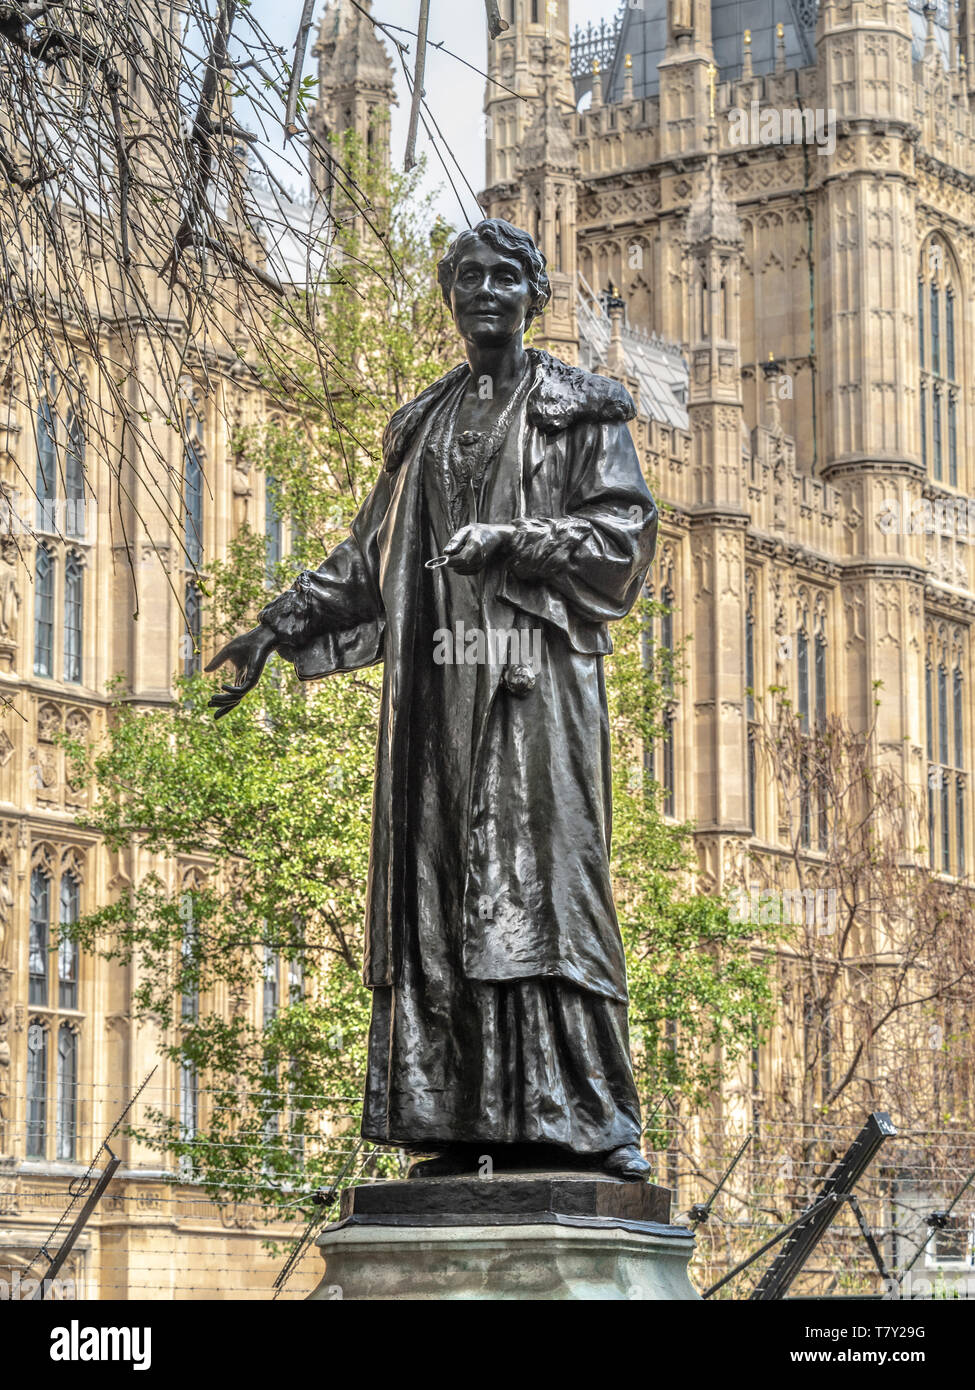 Bronzestatue der Emmeline Pankhurst von Arthur George Walker in den Victoria Tower Gardens, Westminster, London, Großbritannien. Vorgestellt im Jahr 1930. Stockfoto